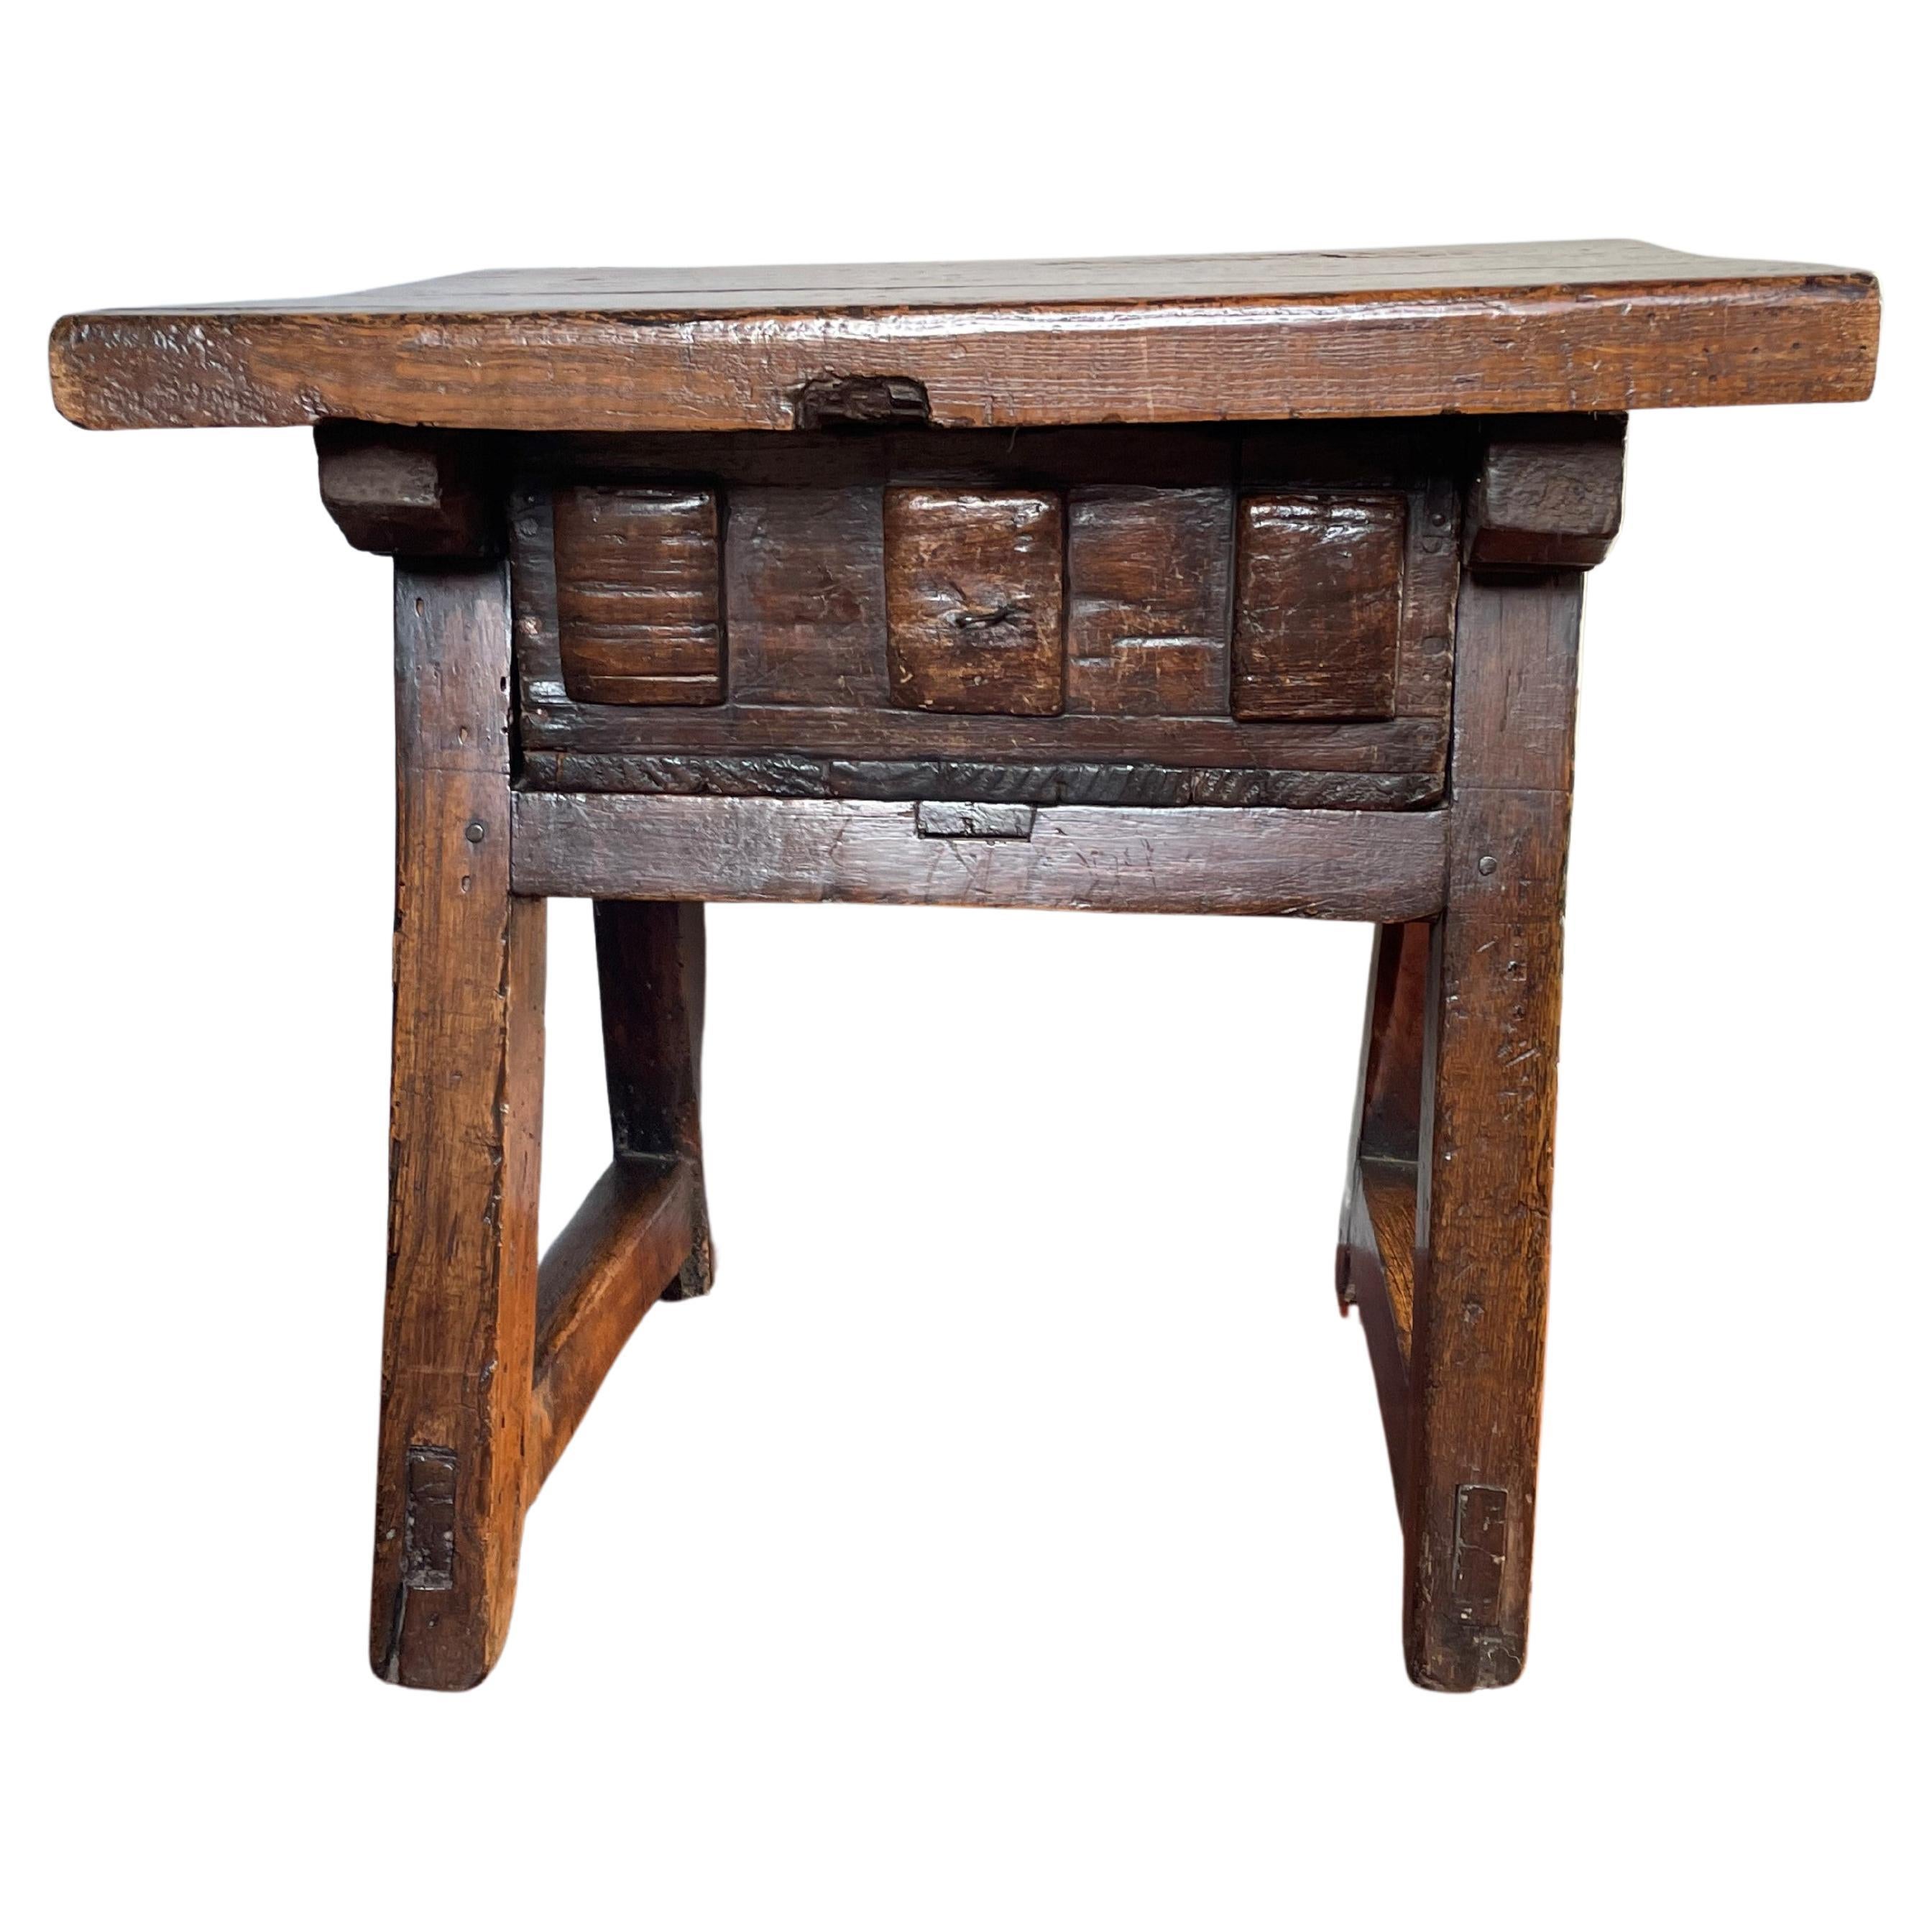 Ancienne et rustique table de banque de campagne espagnole en bois du début des années 1800 avec tiroir